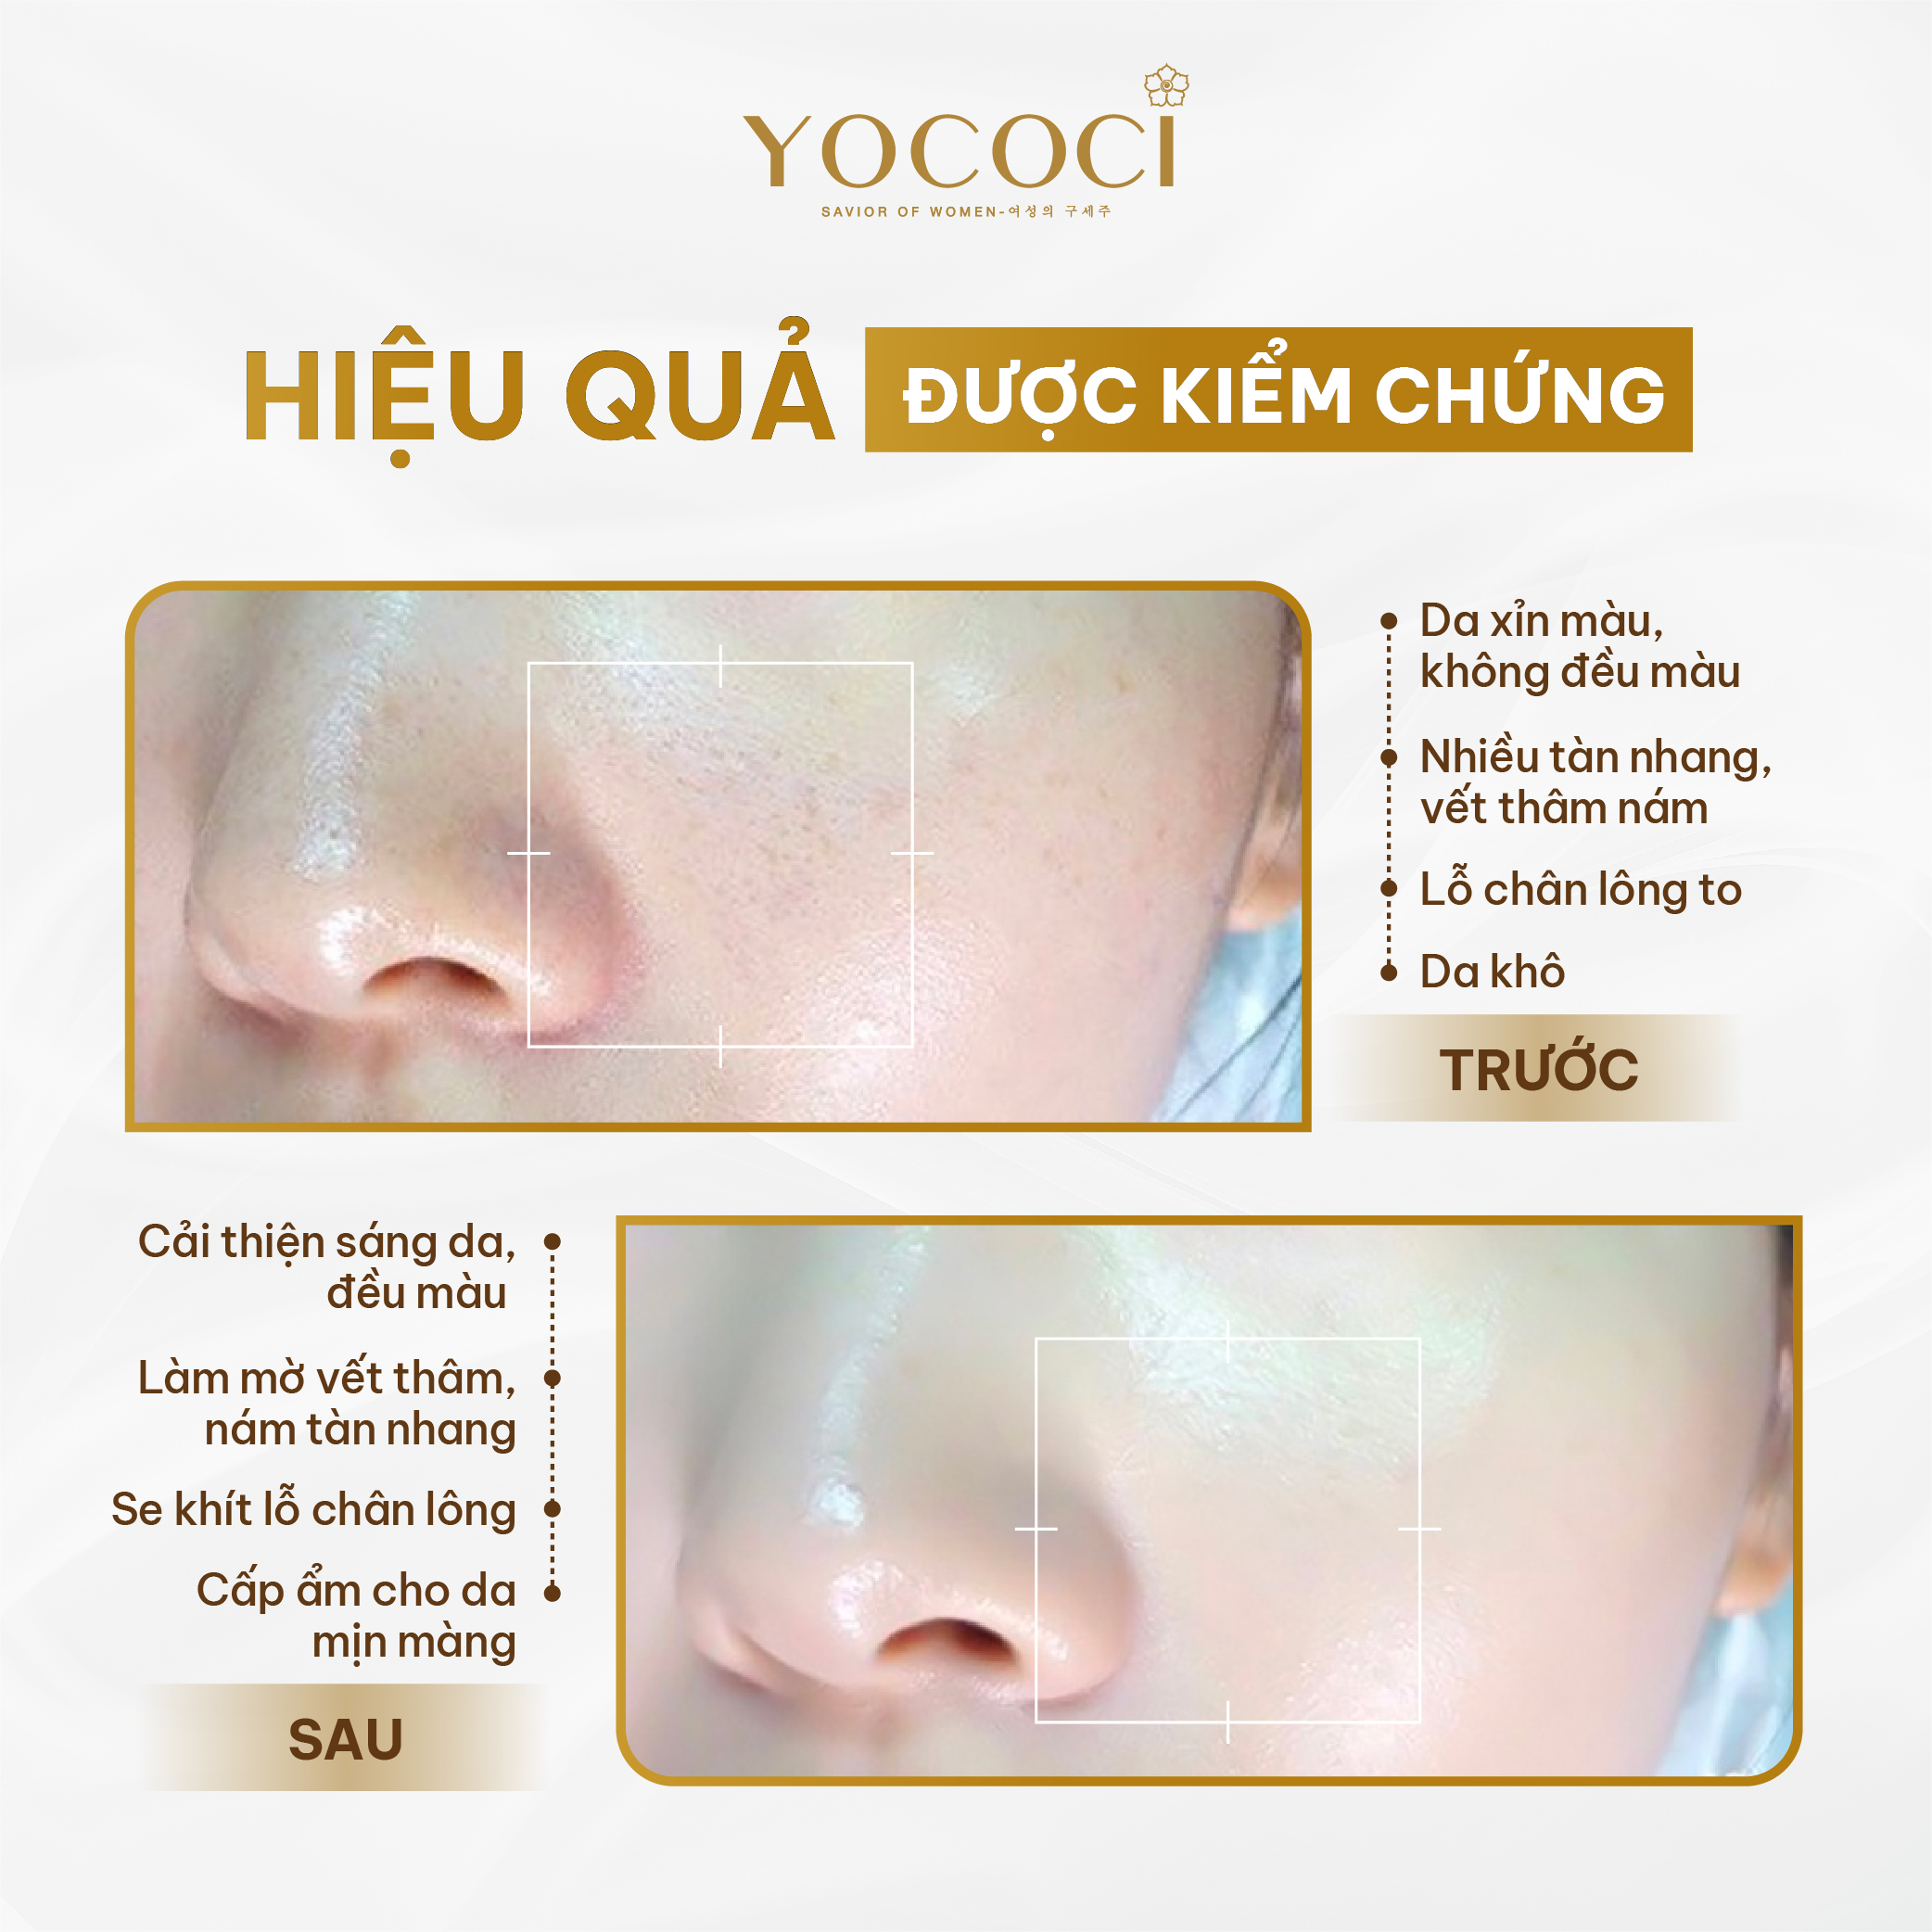 Bộ 4 sản phẩm Yococi (Kem Chống Nắng 50g + Kem Face 20g + Sữa Rửa Mặt 100g + Serum 20ml)